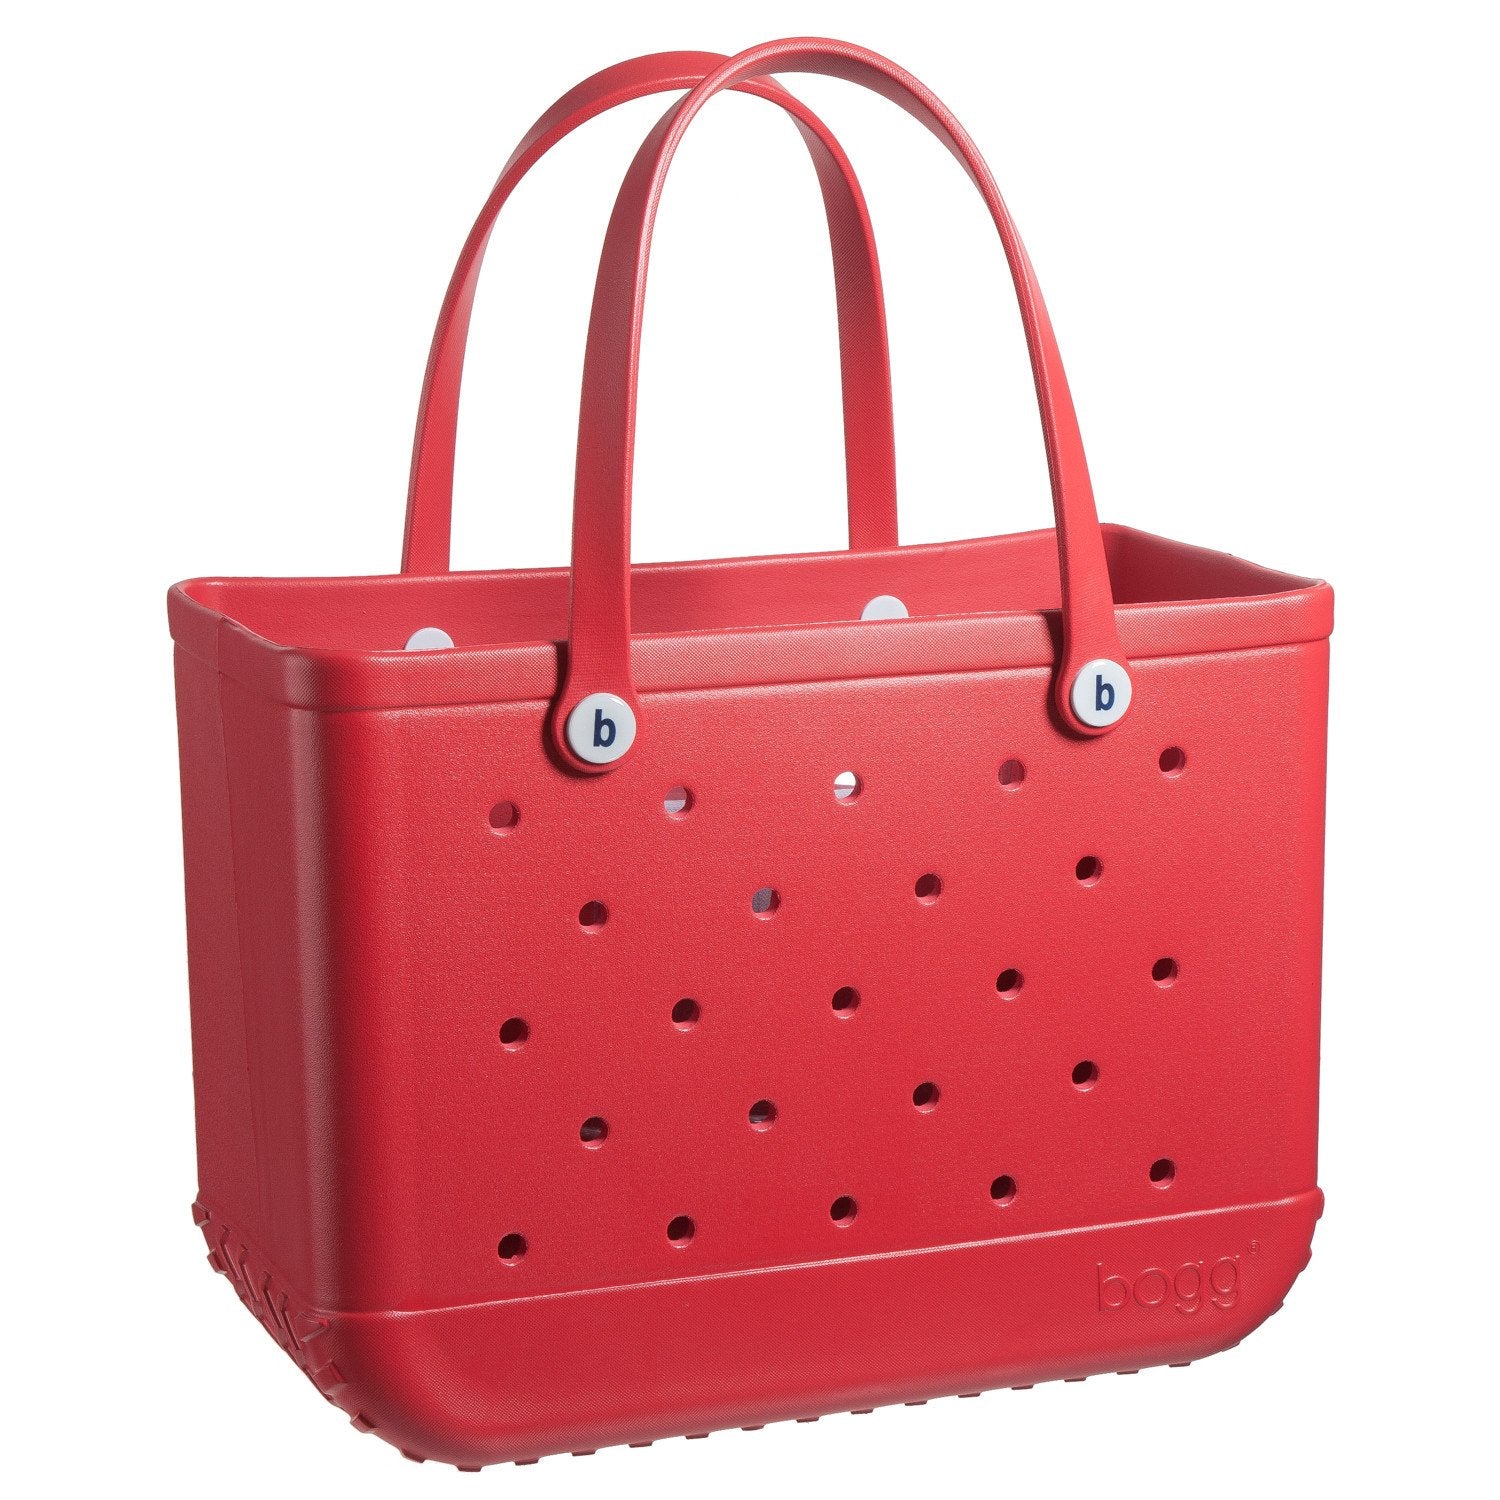 Original Bogg Bag in Red